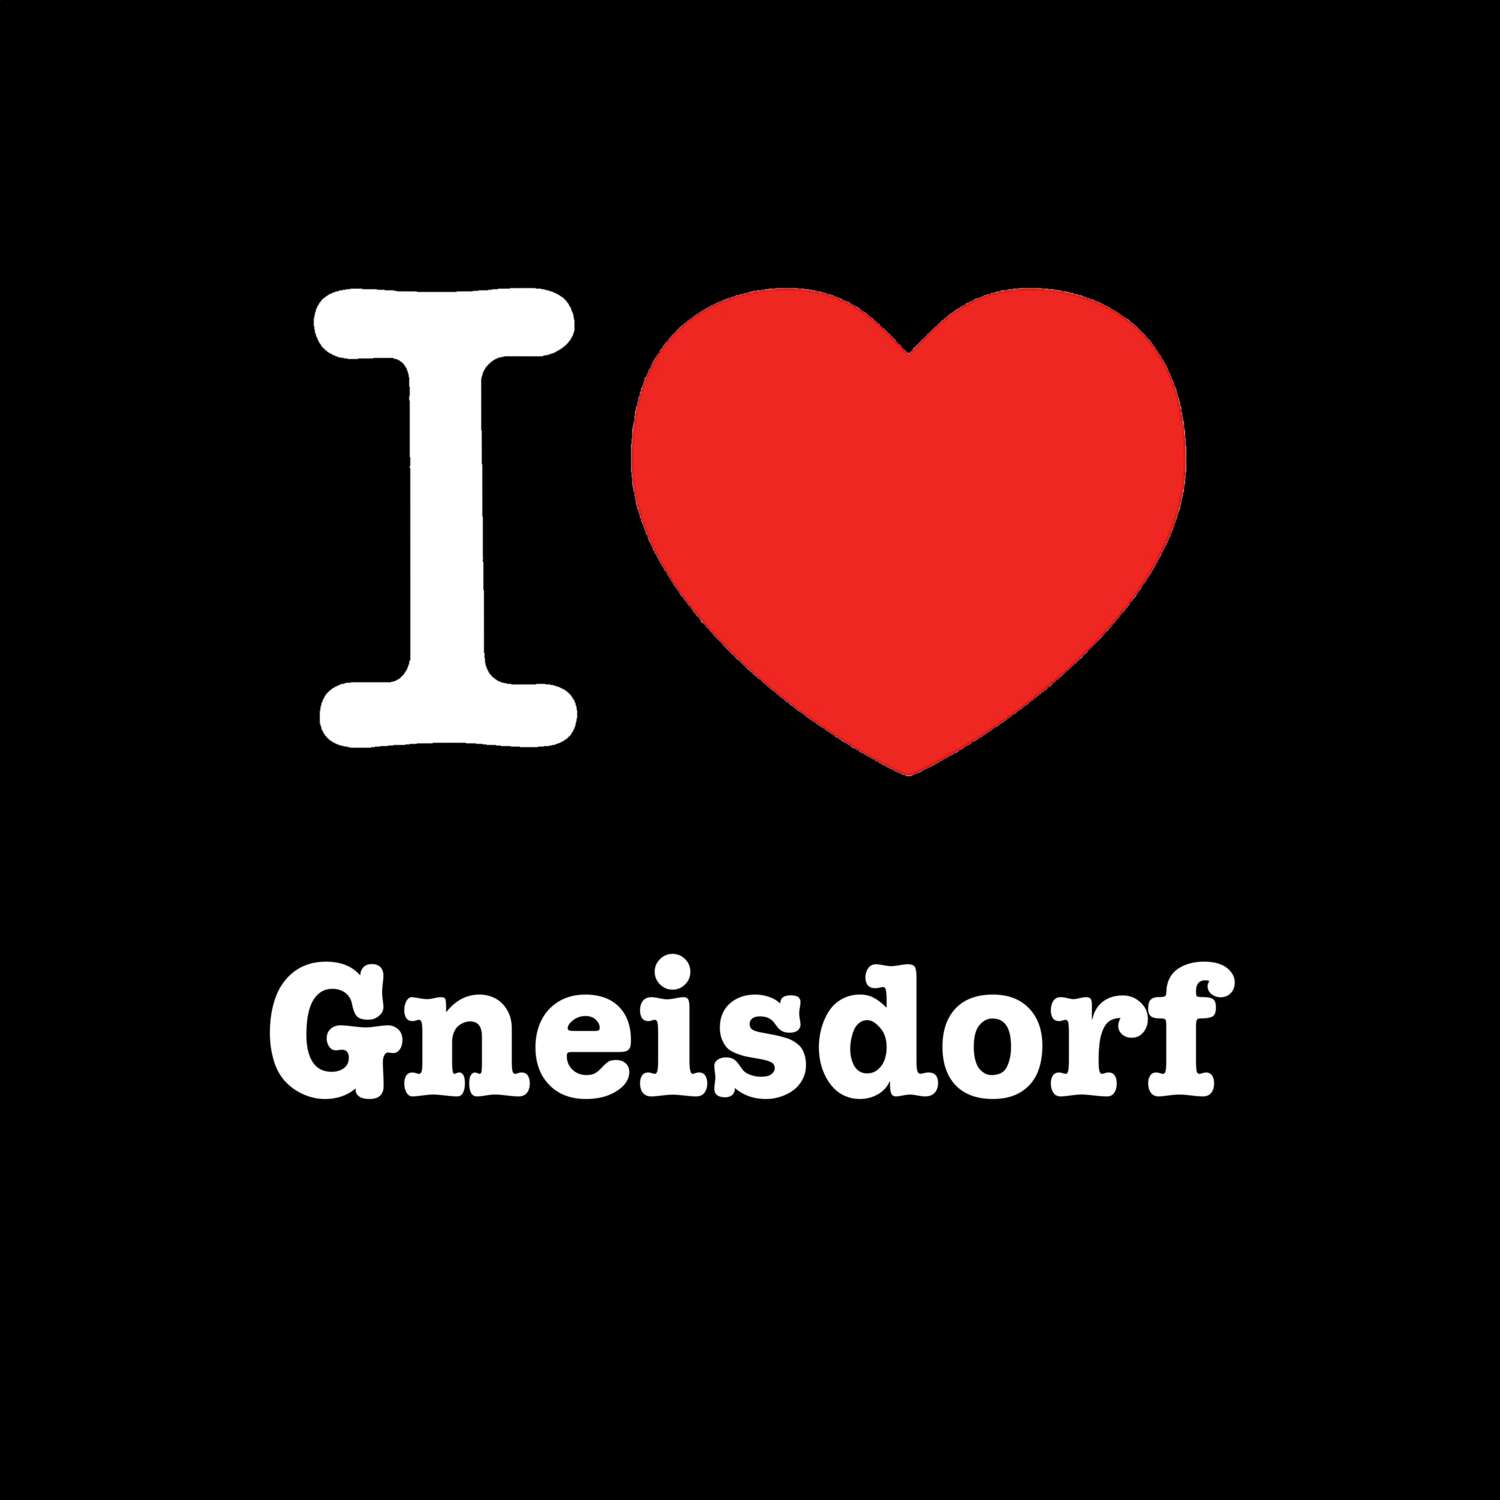 Gneisdorf T-Shirt »I love«